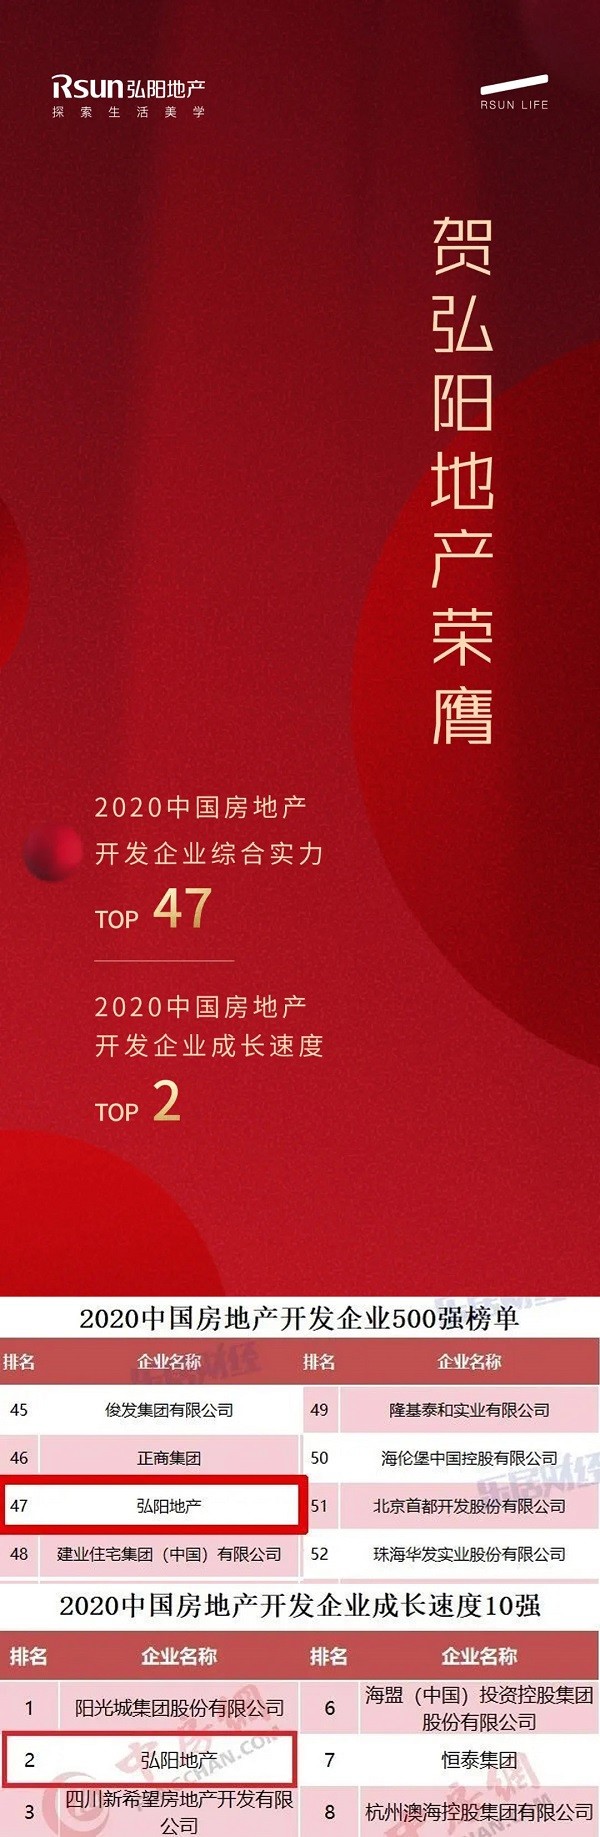 跨入TOP50门槛:弘阳地产跻身“2020中国房地产500强”TOP47